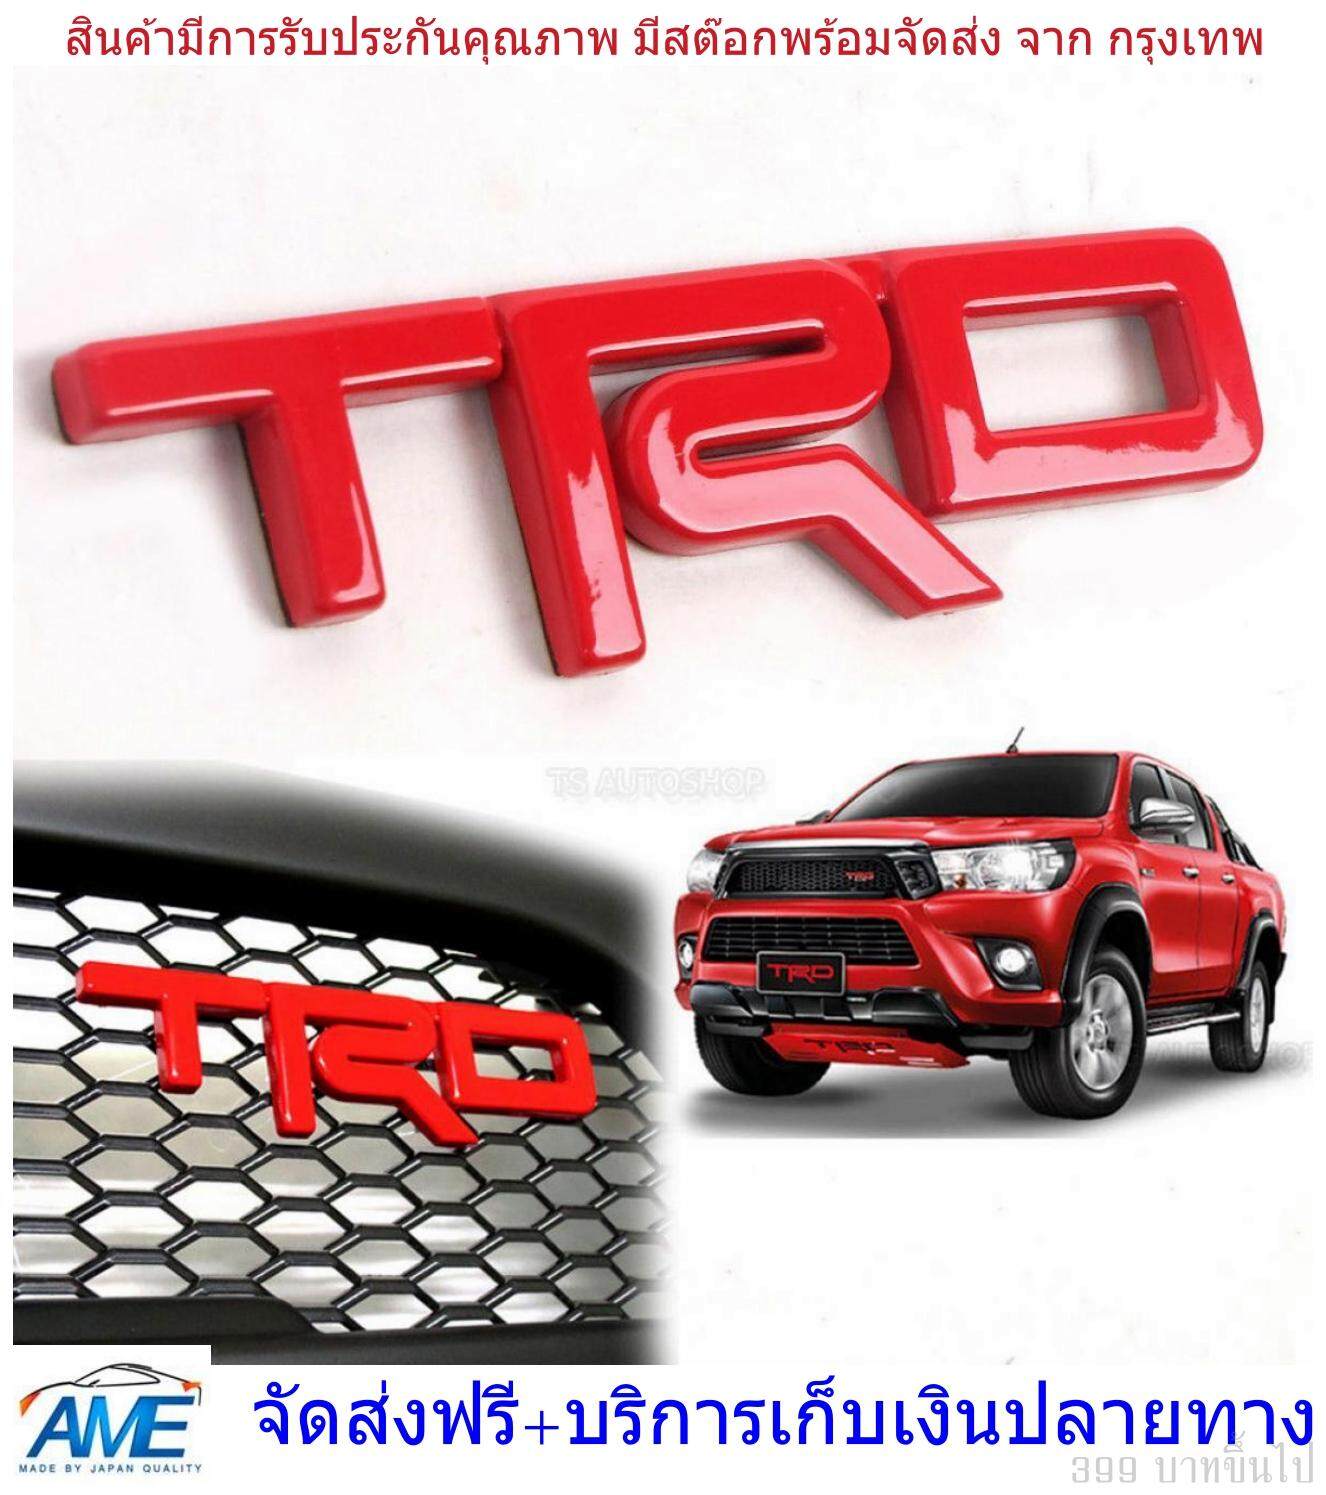 อักษร logo โลโก้ TRD สีแดง เงา โตโยต้า รีโว่ รีโว้ วีโก้ กระจังหน้า ABS + 3M เทป ขนาด 13.5*3.5*0.5 logo trd